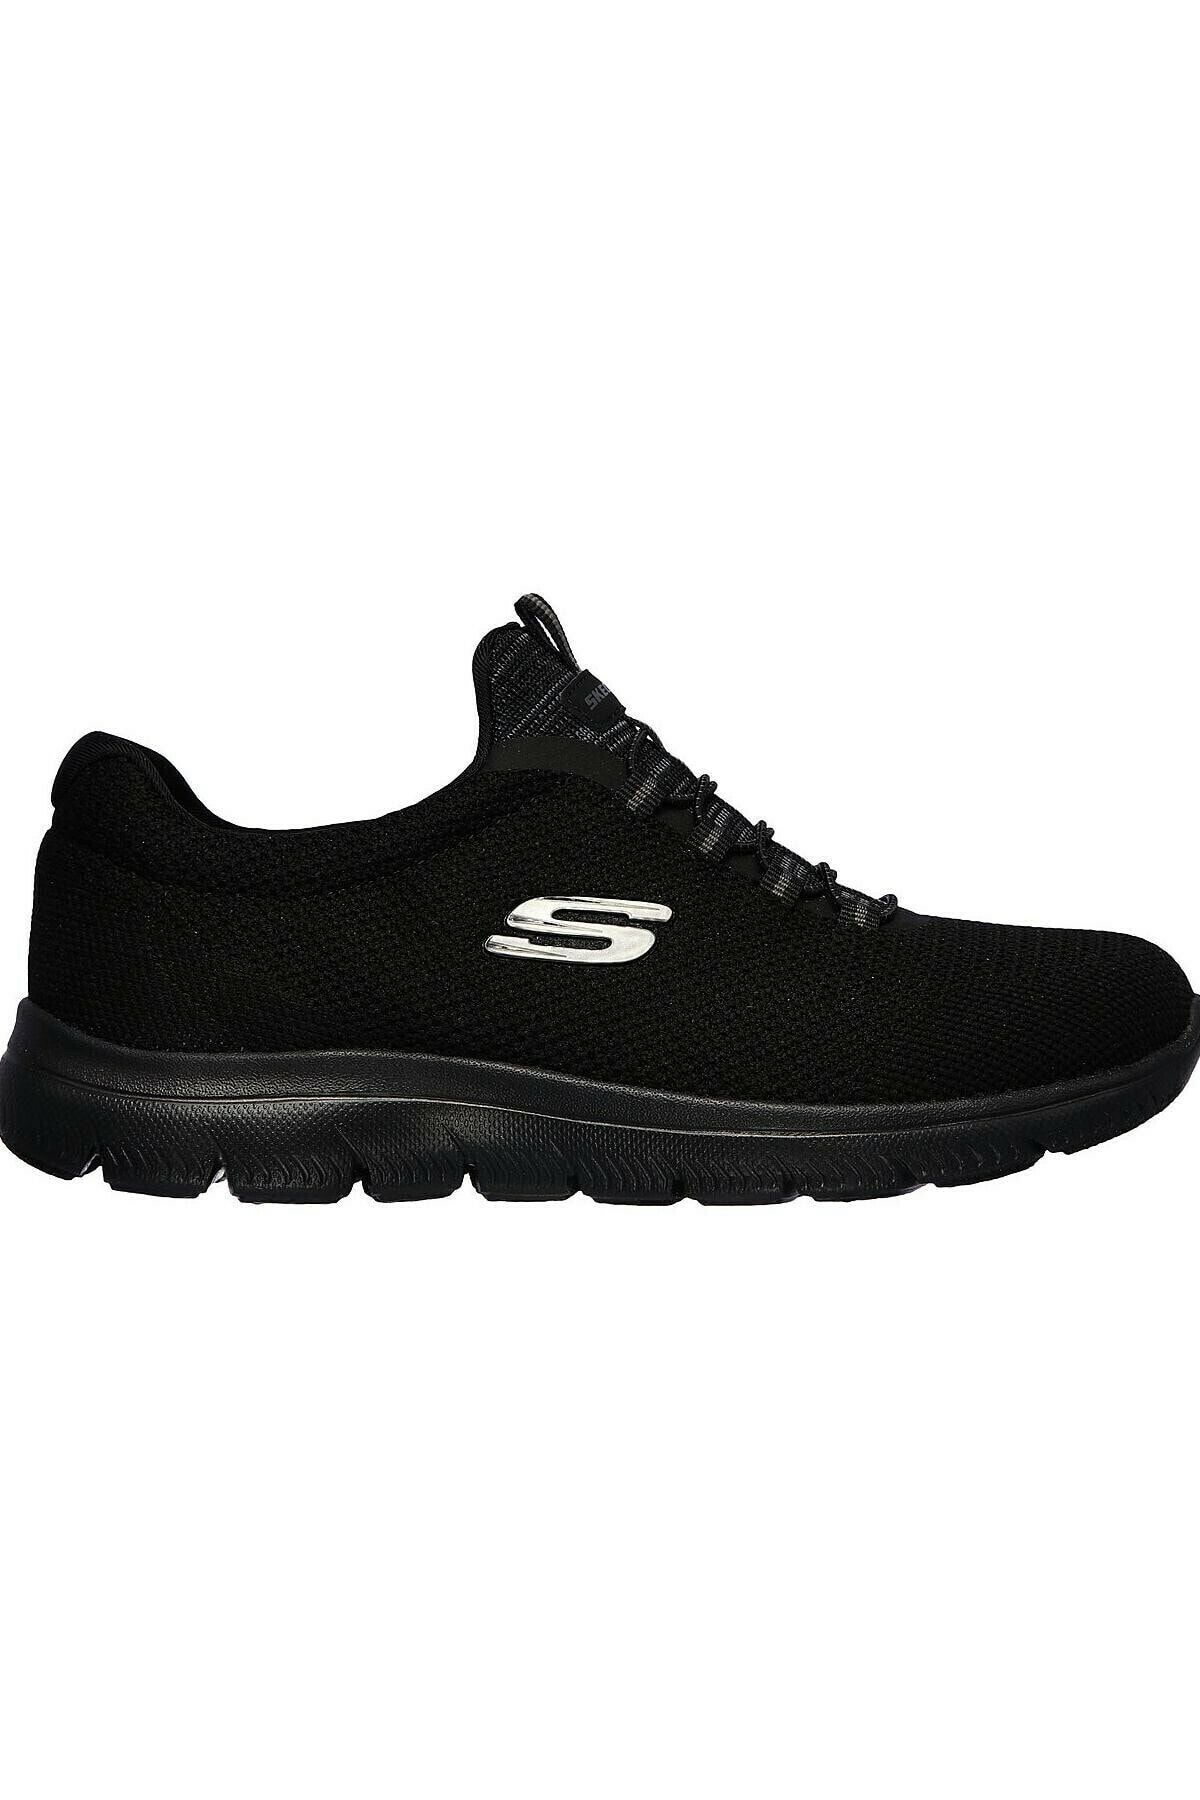 Skechers Kadın Siyah Spor Ayakkabı 149206-bbk